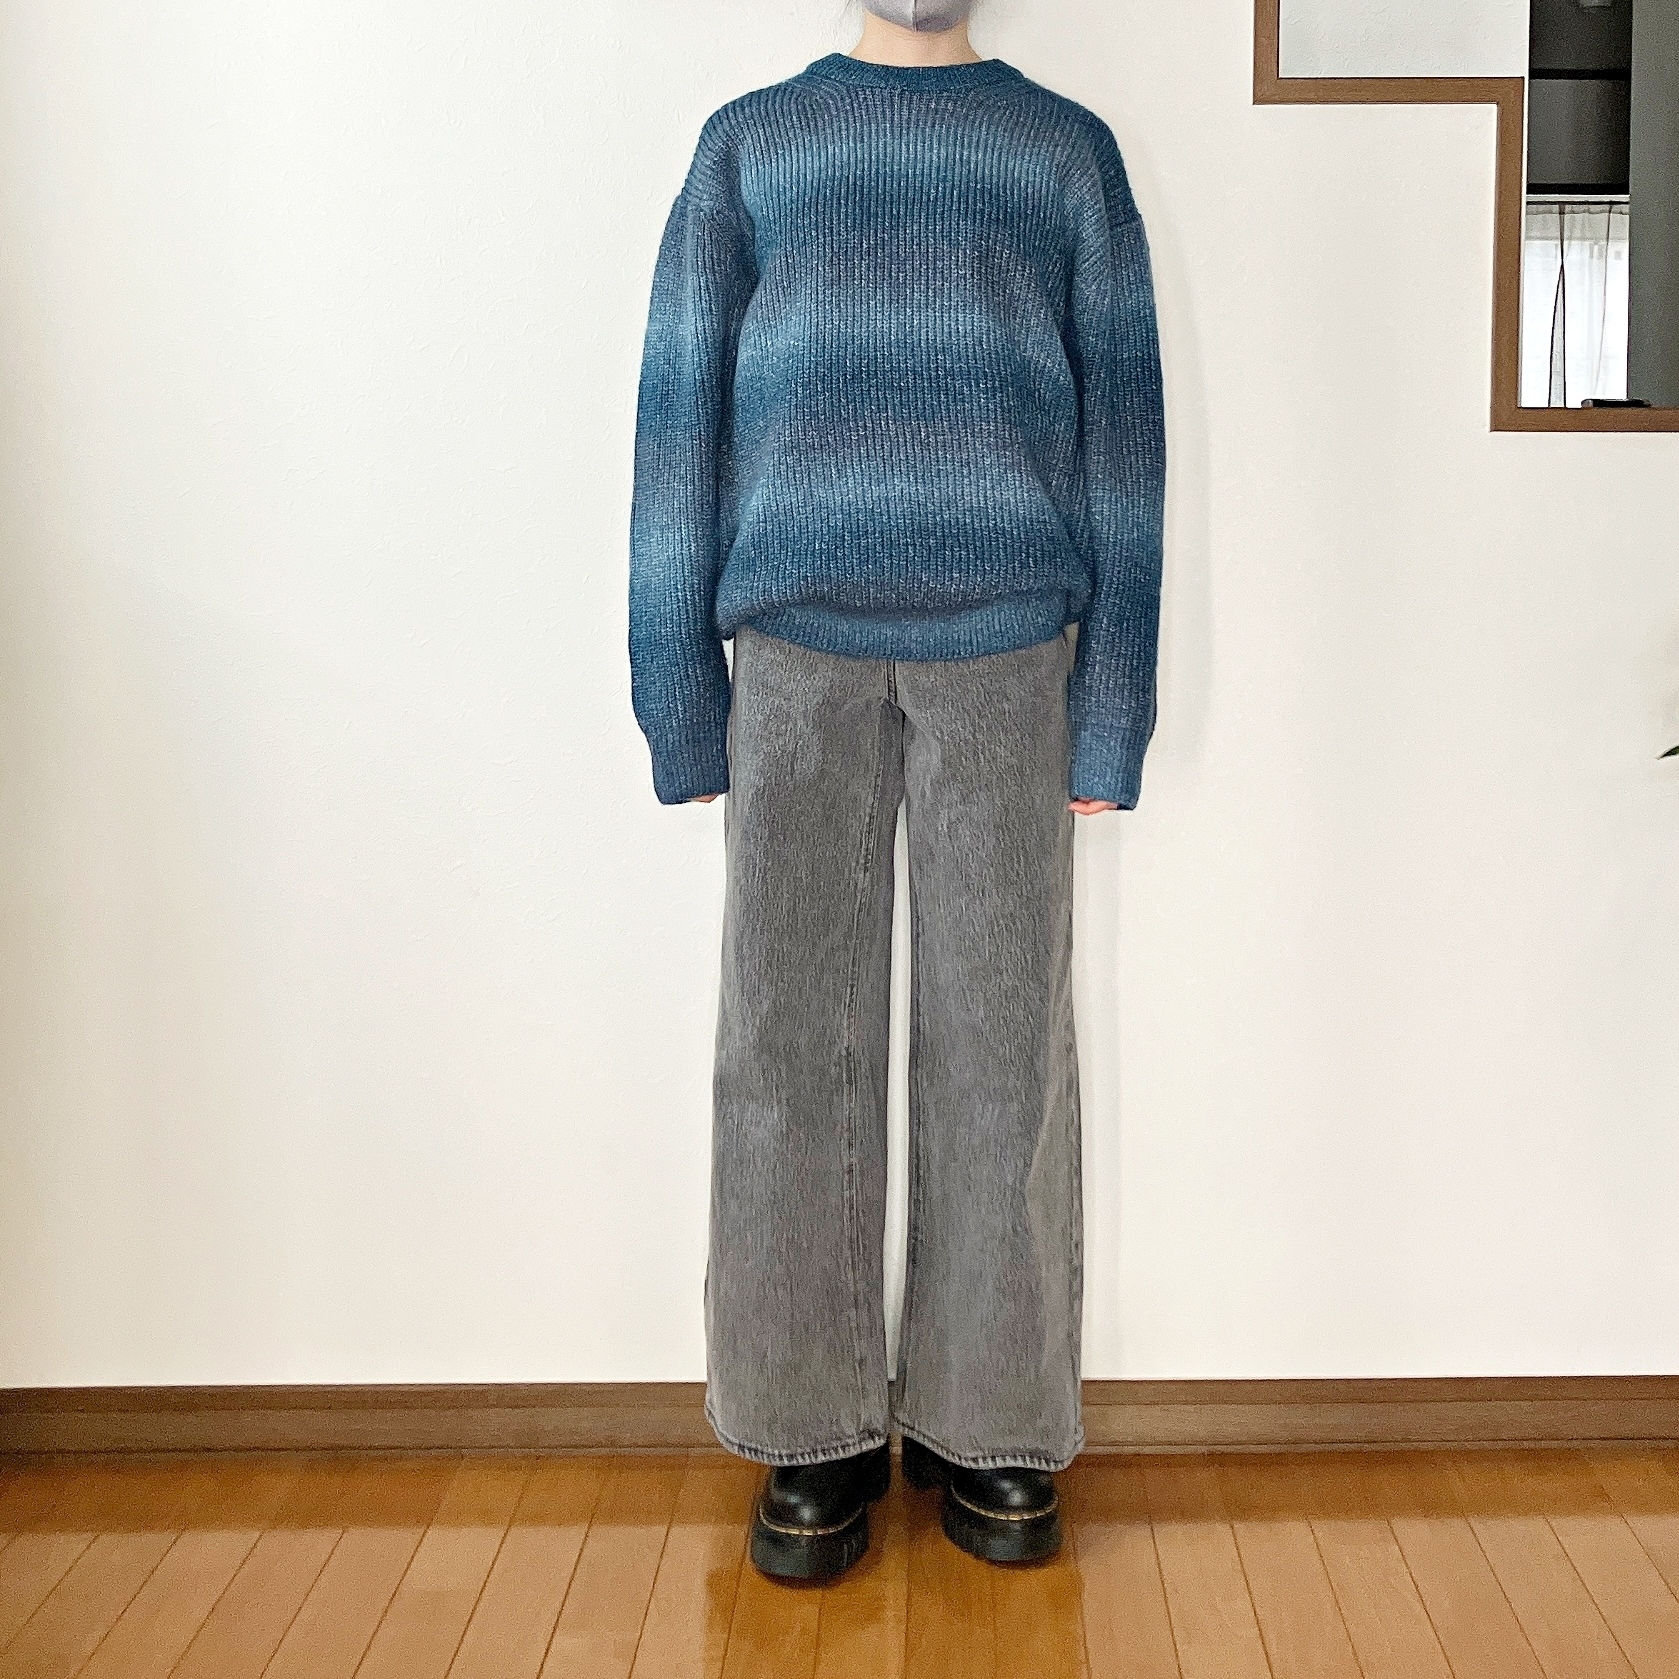 GU（ジーユー）のおすすめジーンズ「ミドルライズワイドジーンズ（丈標準72.0～76.0cm）」